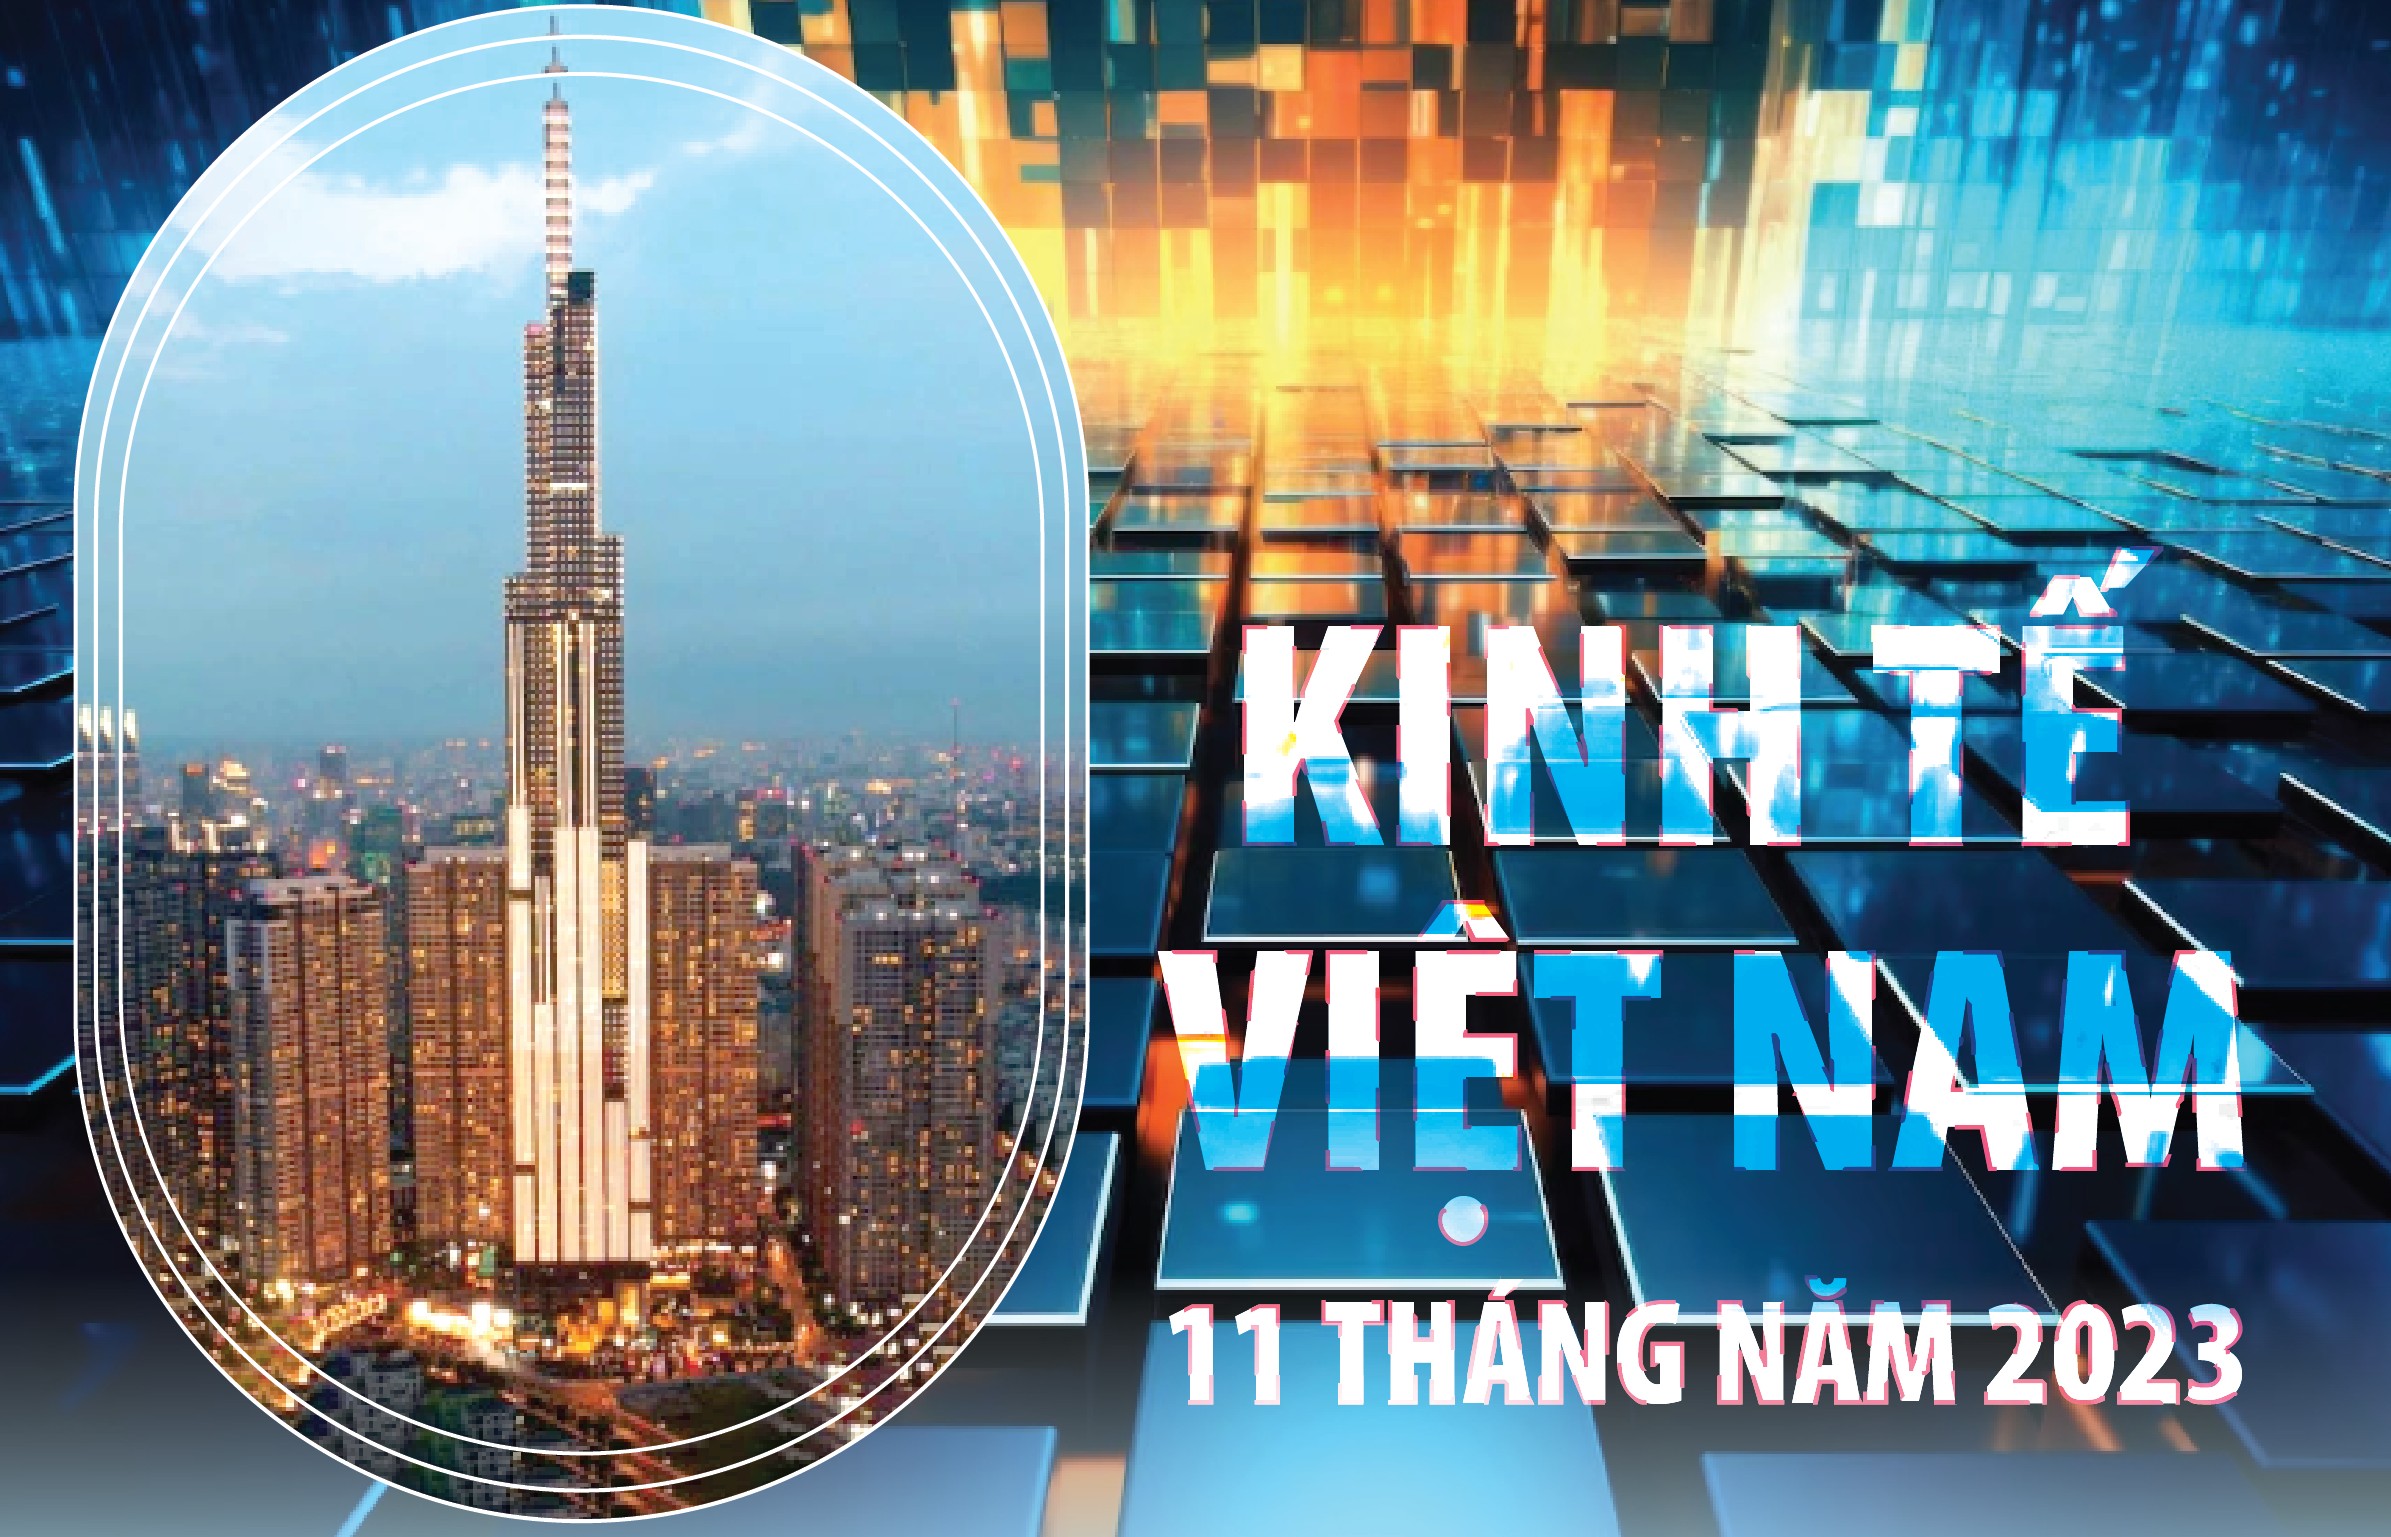 Kinh tế Việt Nam 11 tháng năm 2023